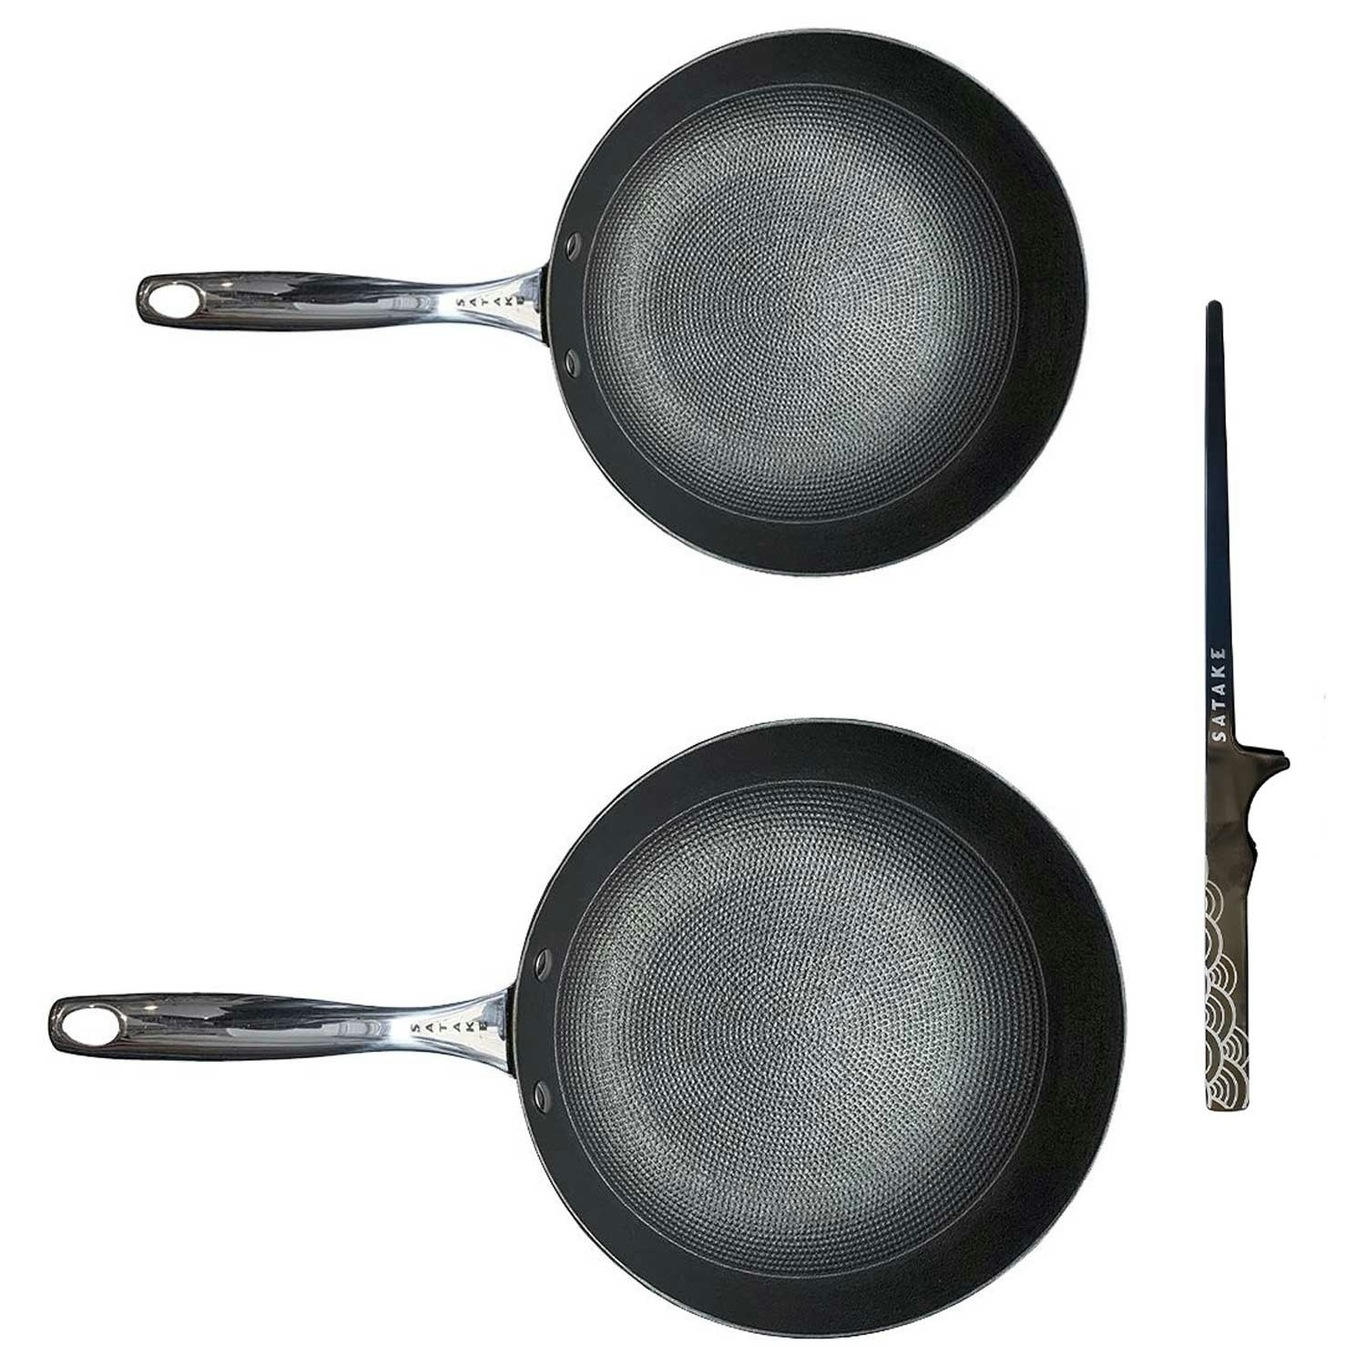 Cast Iron Frying Pan, 29 cm - Satake @ RoyalDesign